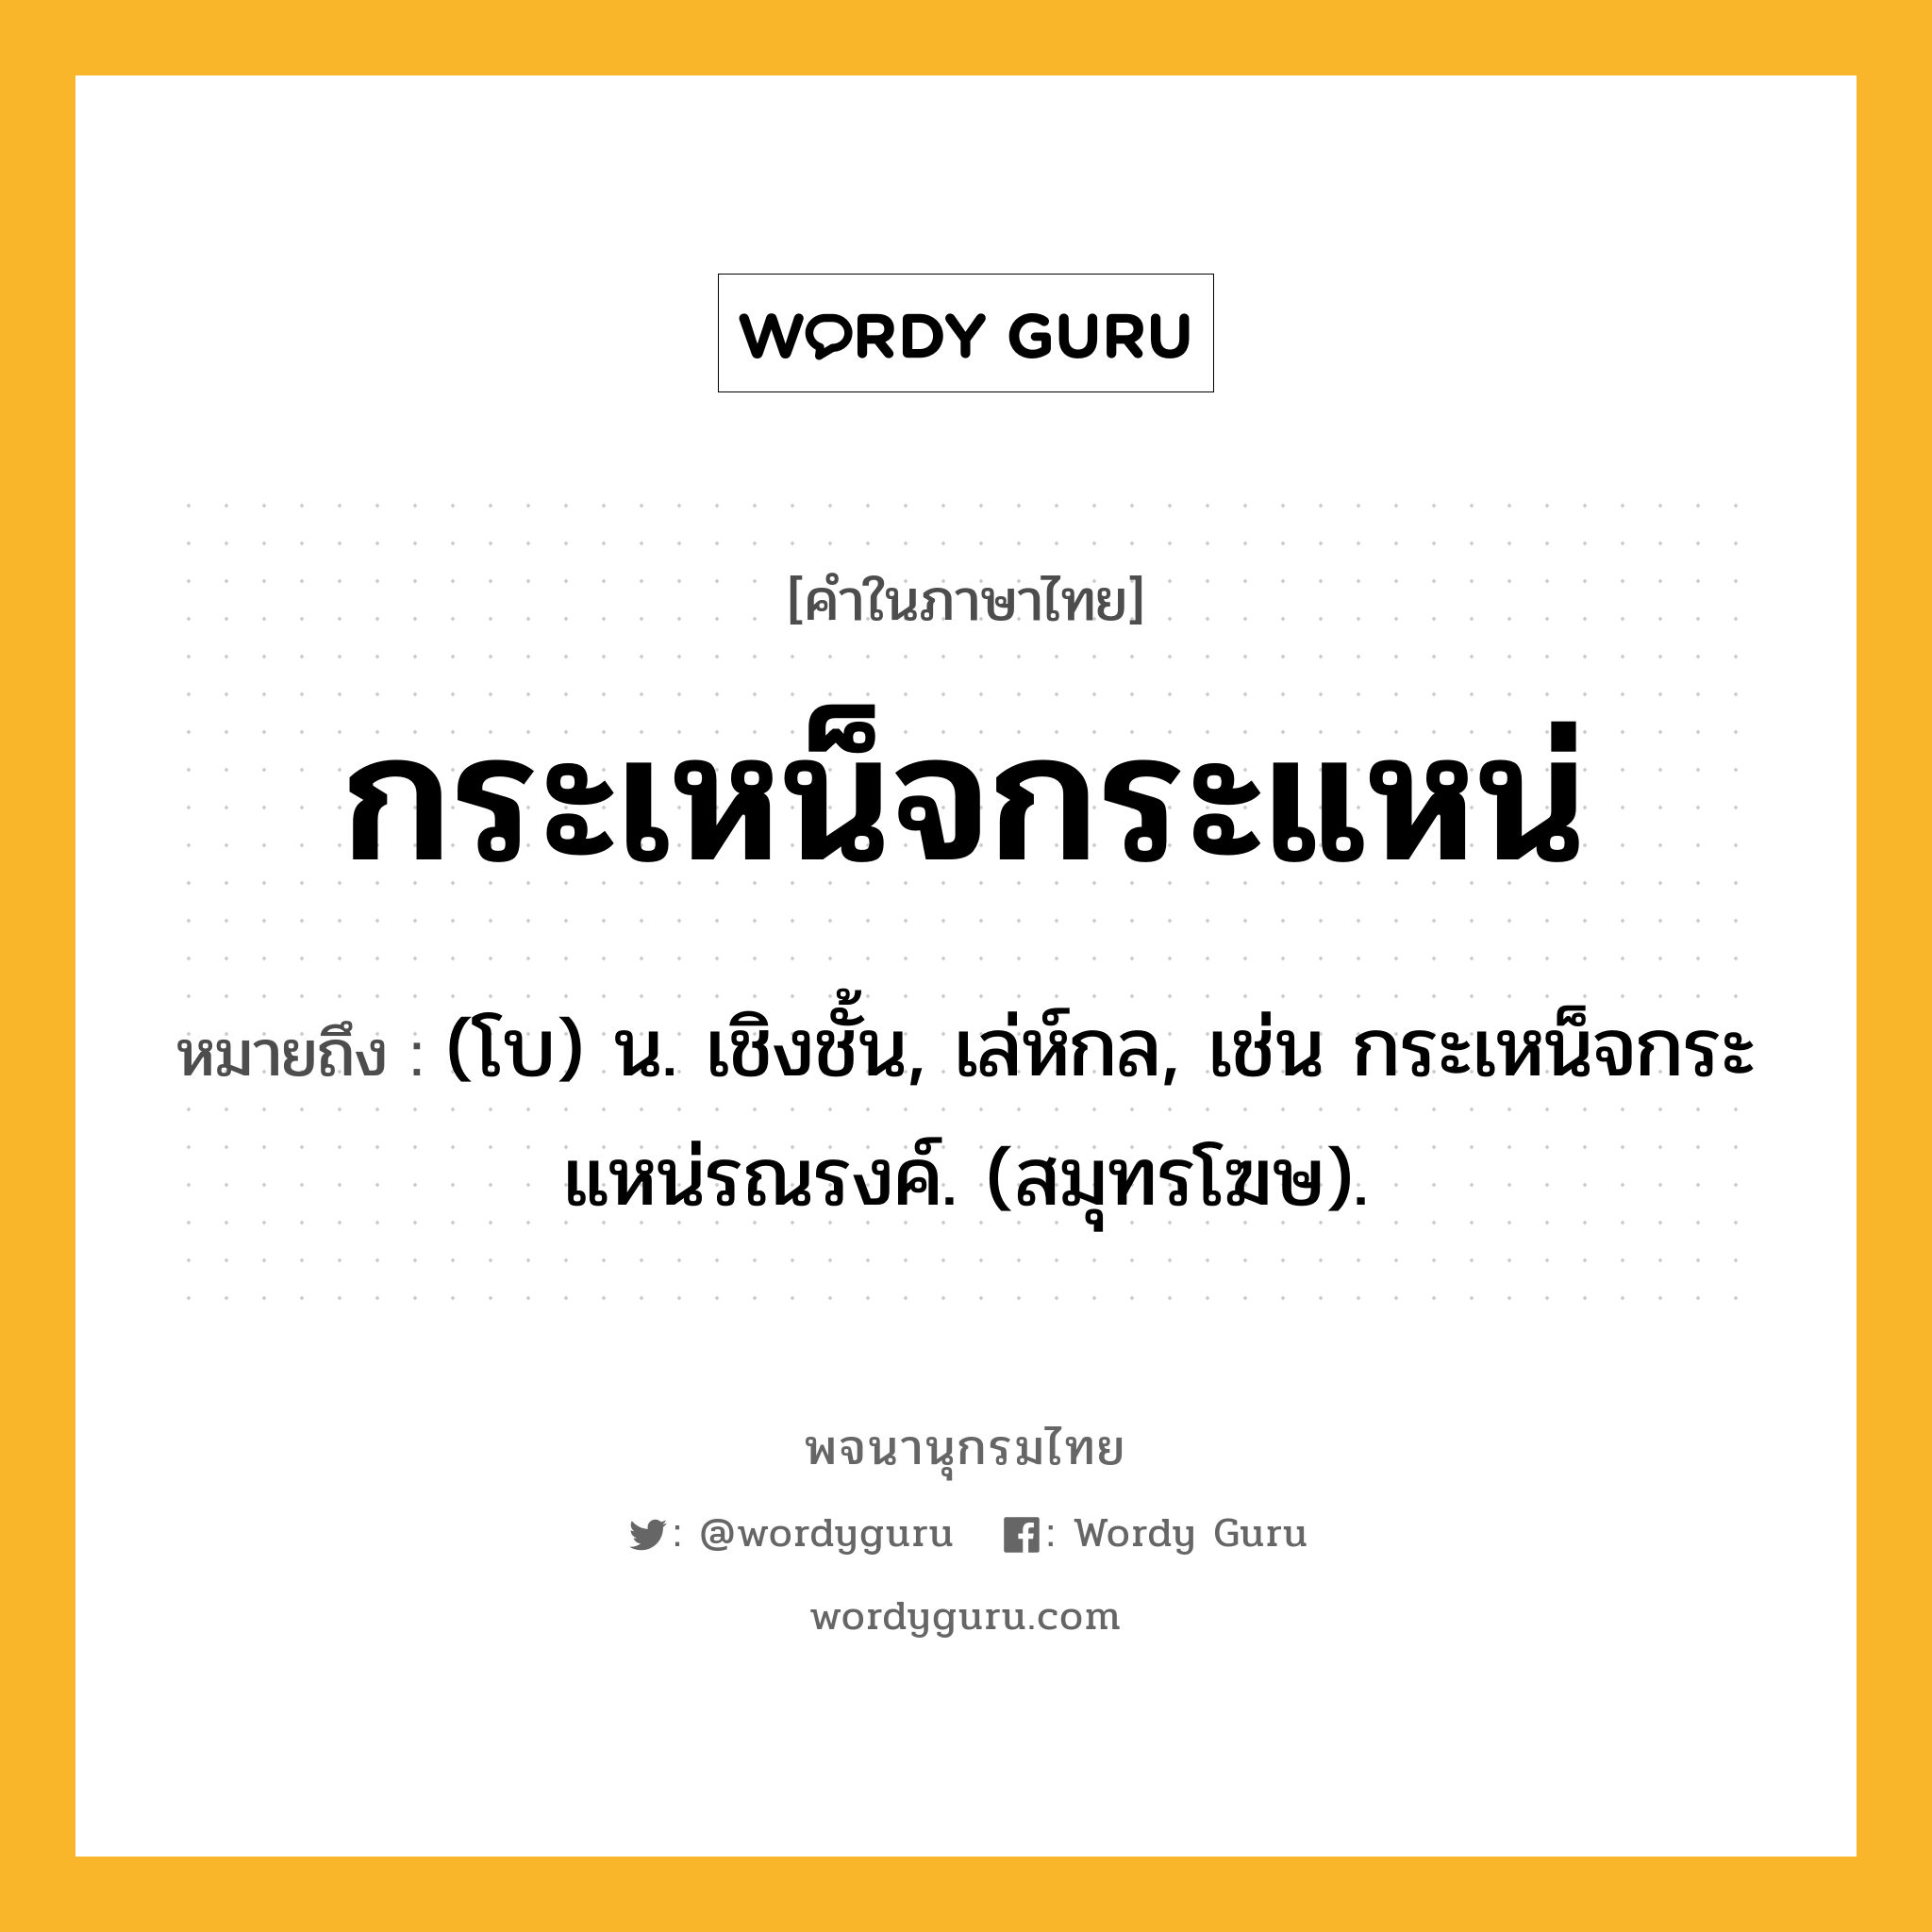 กระเหน็จกระแหน่ หมายถึงอะไร?, คำในภาษาไทย กระเหน็จกระแหน่ หมายถึง (โบ) น. เชิงชั้น, เล่ห์กล, เช่น กระเหน็จกระแหน่รณรงค์. (สมุทรโฆษ).